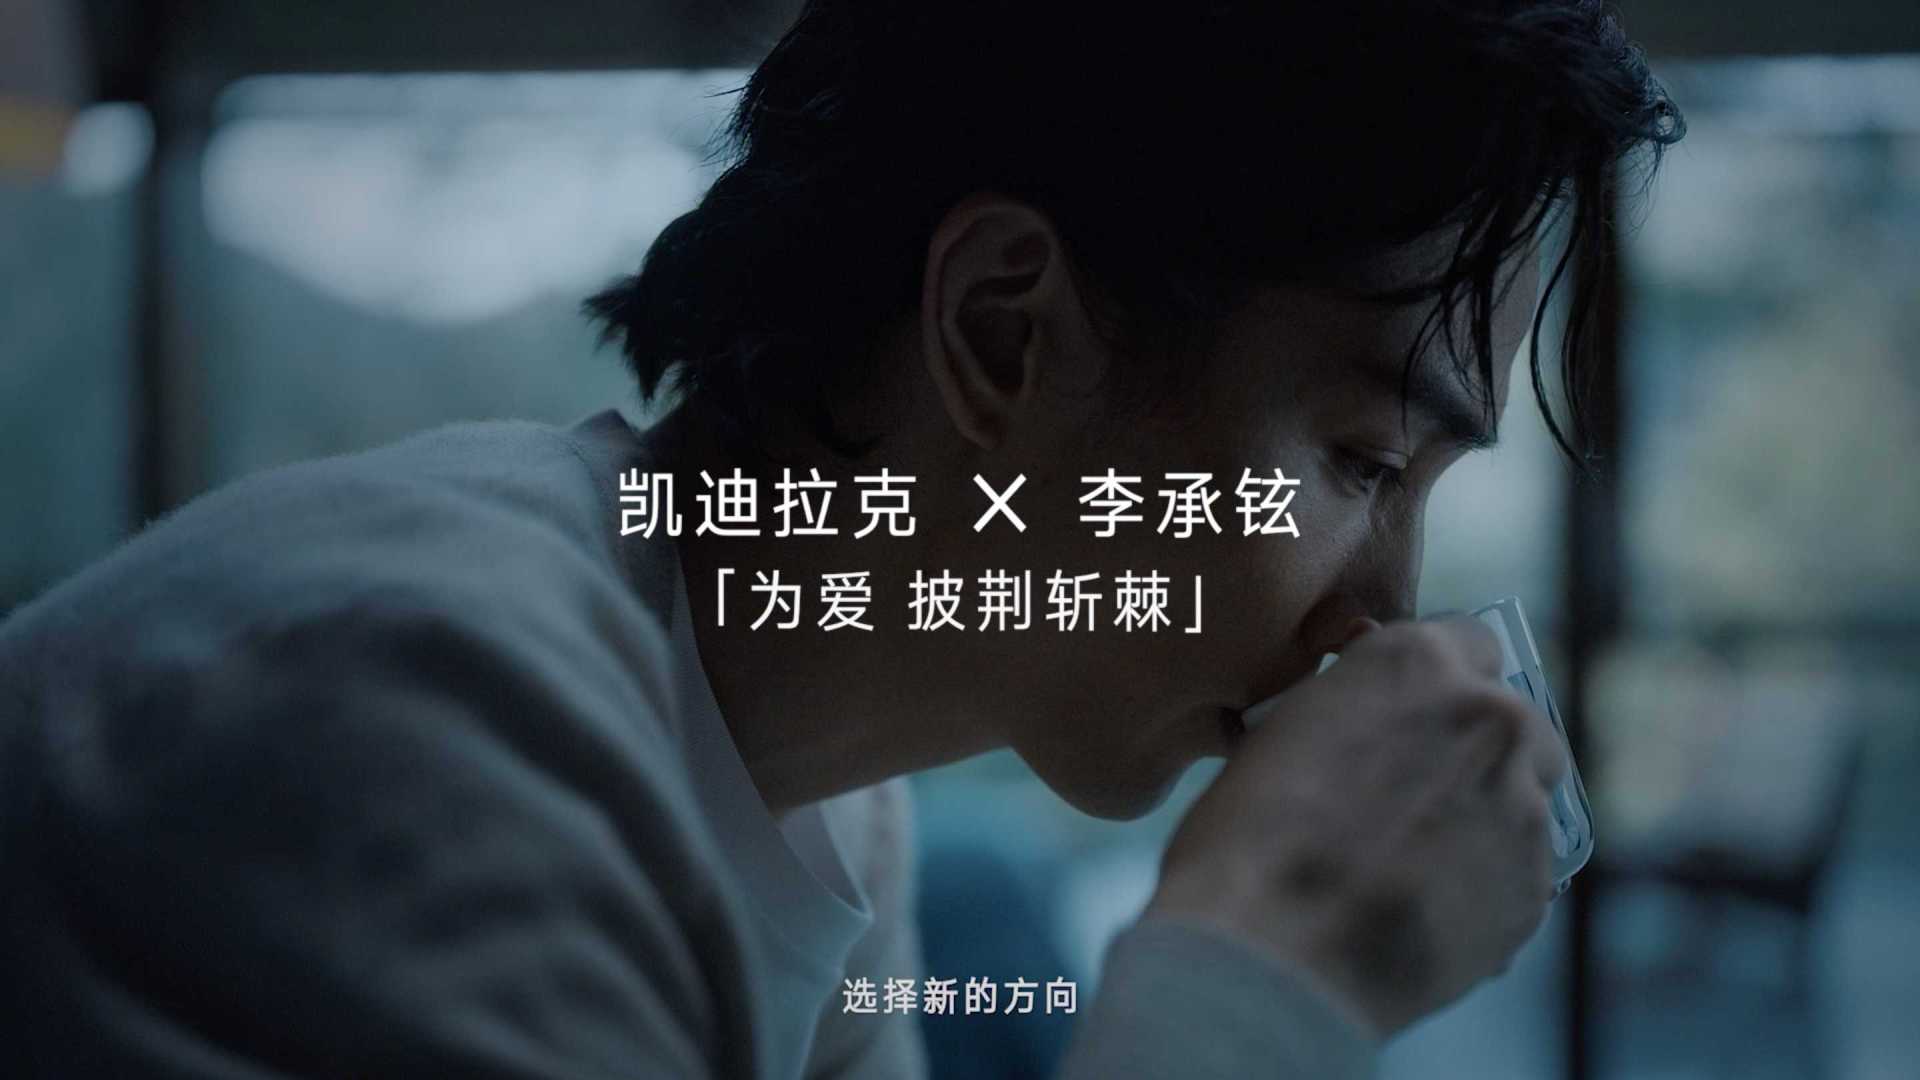 凯迪拉克 李承铉「为爱披荆斩棘」导演版